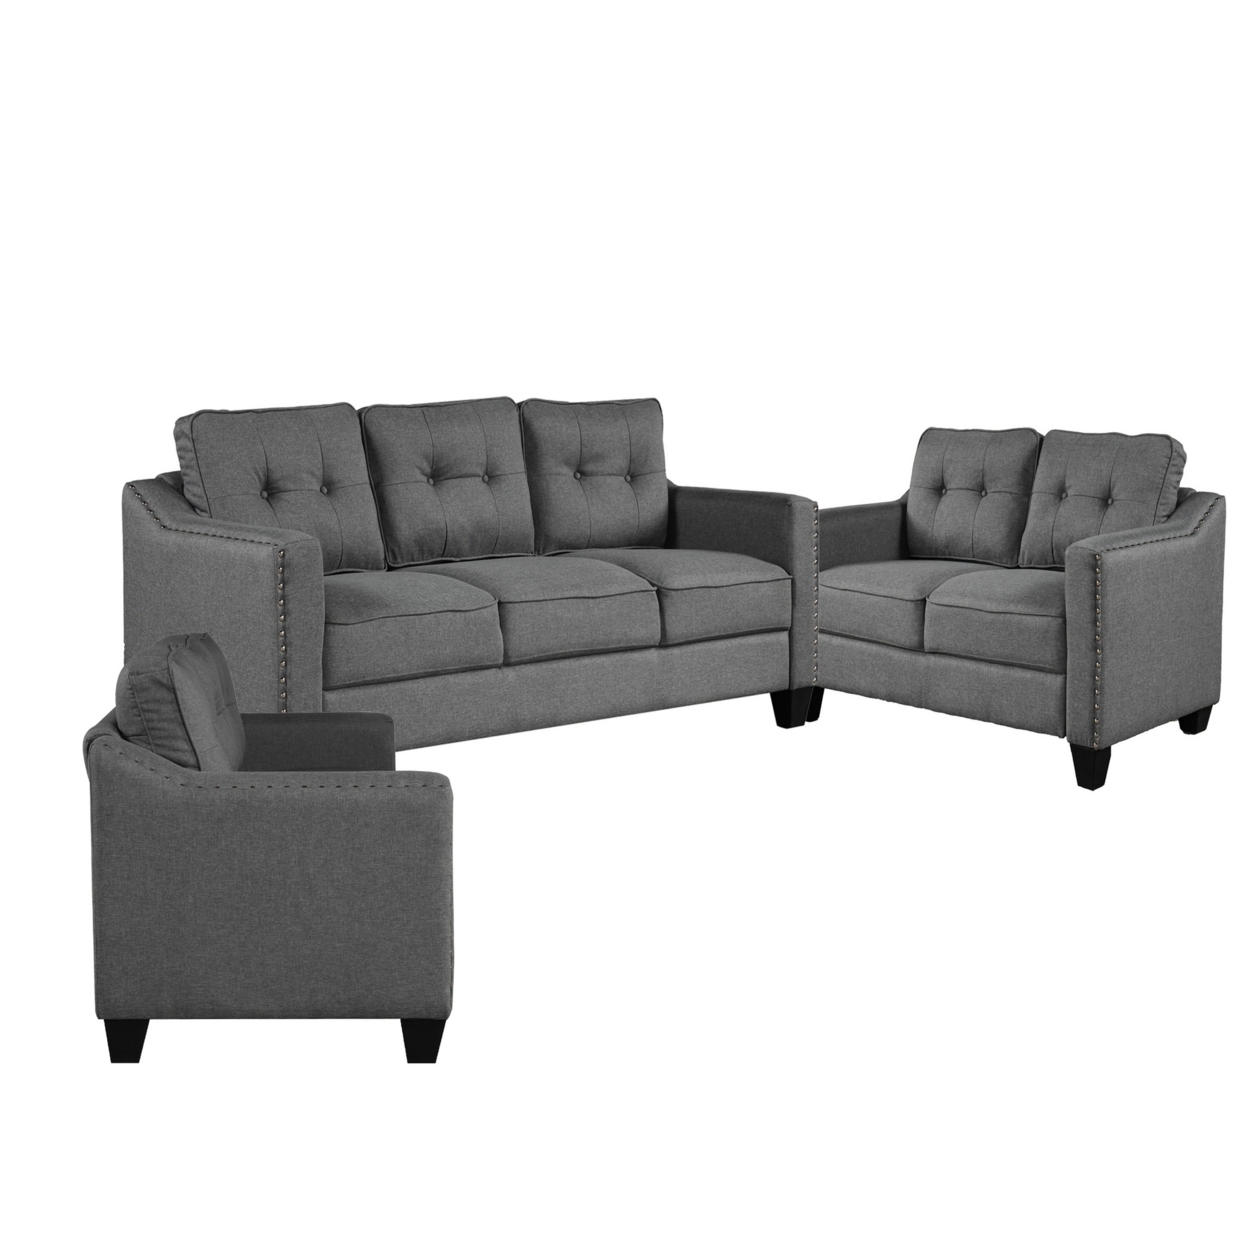 De 3 Piece Sofa Set, Soft Poly Linen Upholstery And Track Arms, Gray- Saltoro Sherpi